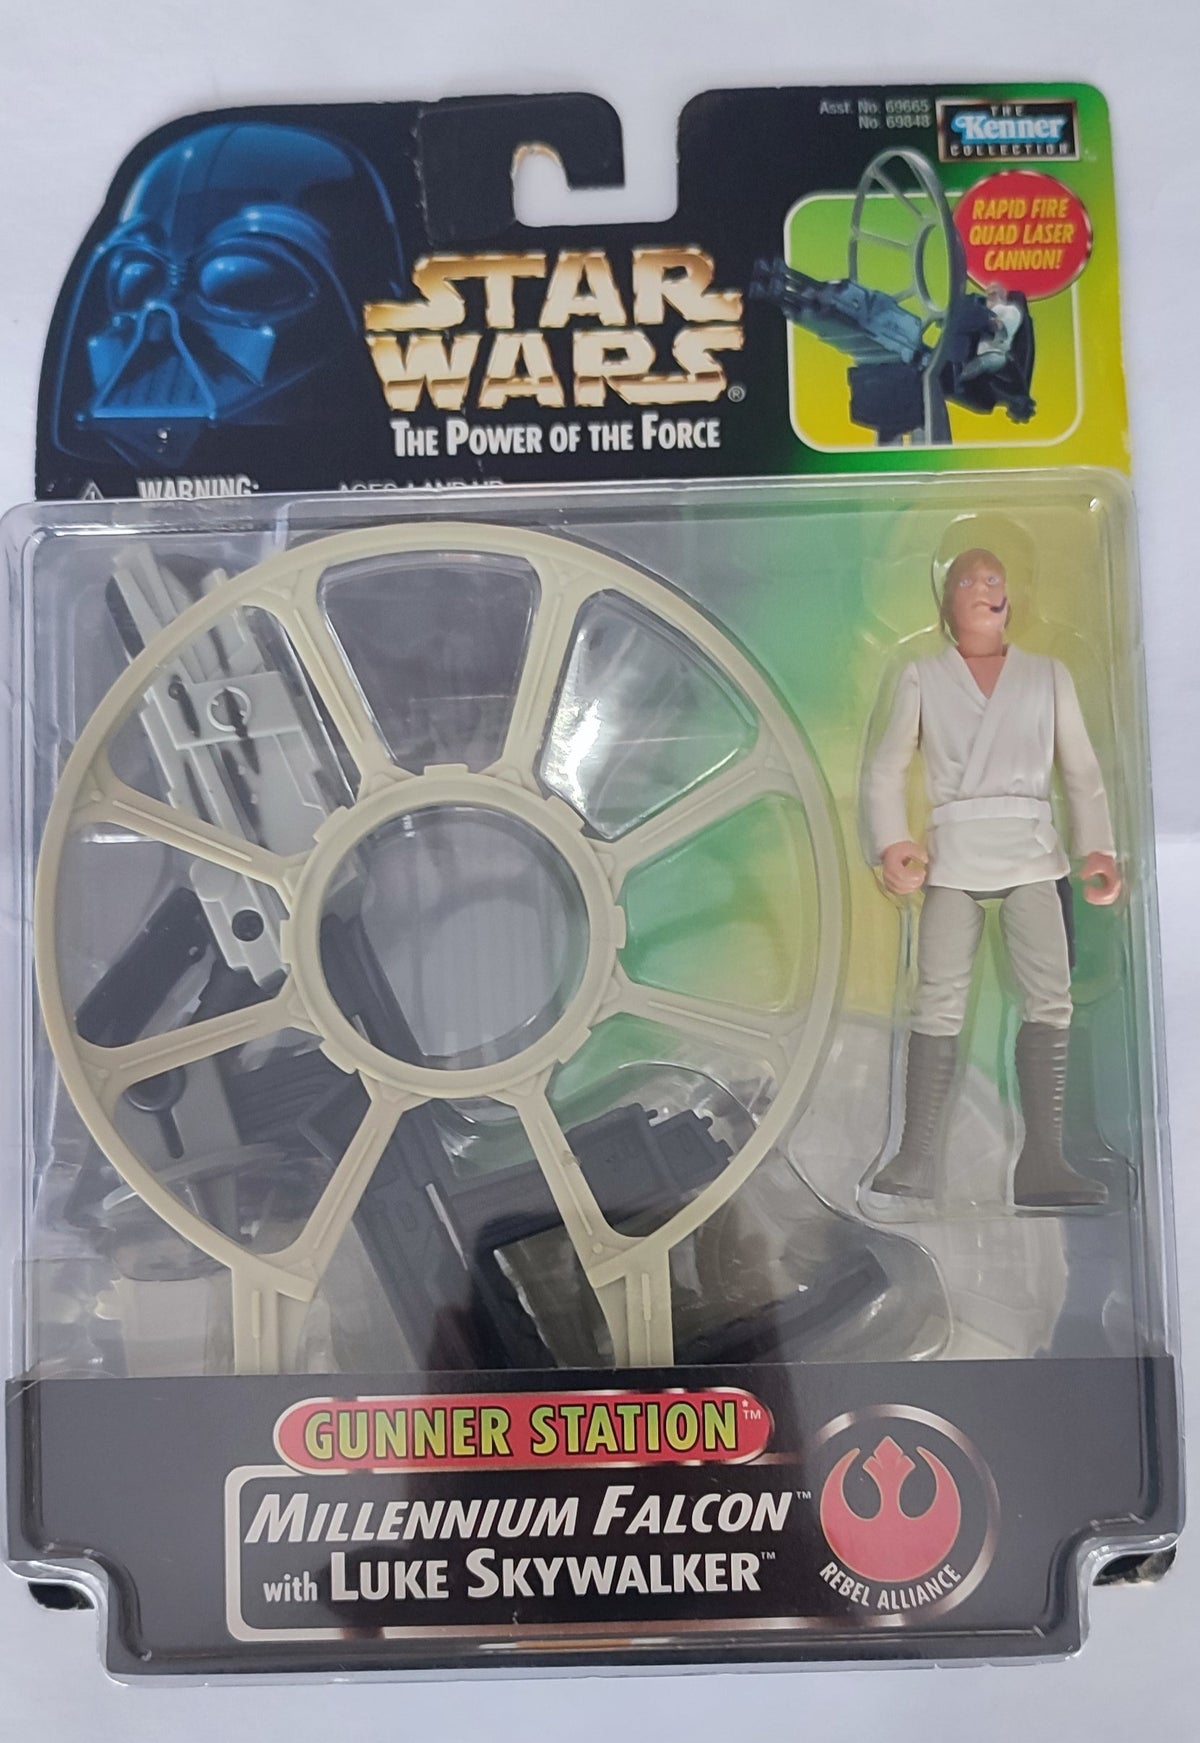 Millenium Falcon with Luke Skywalker